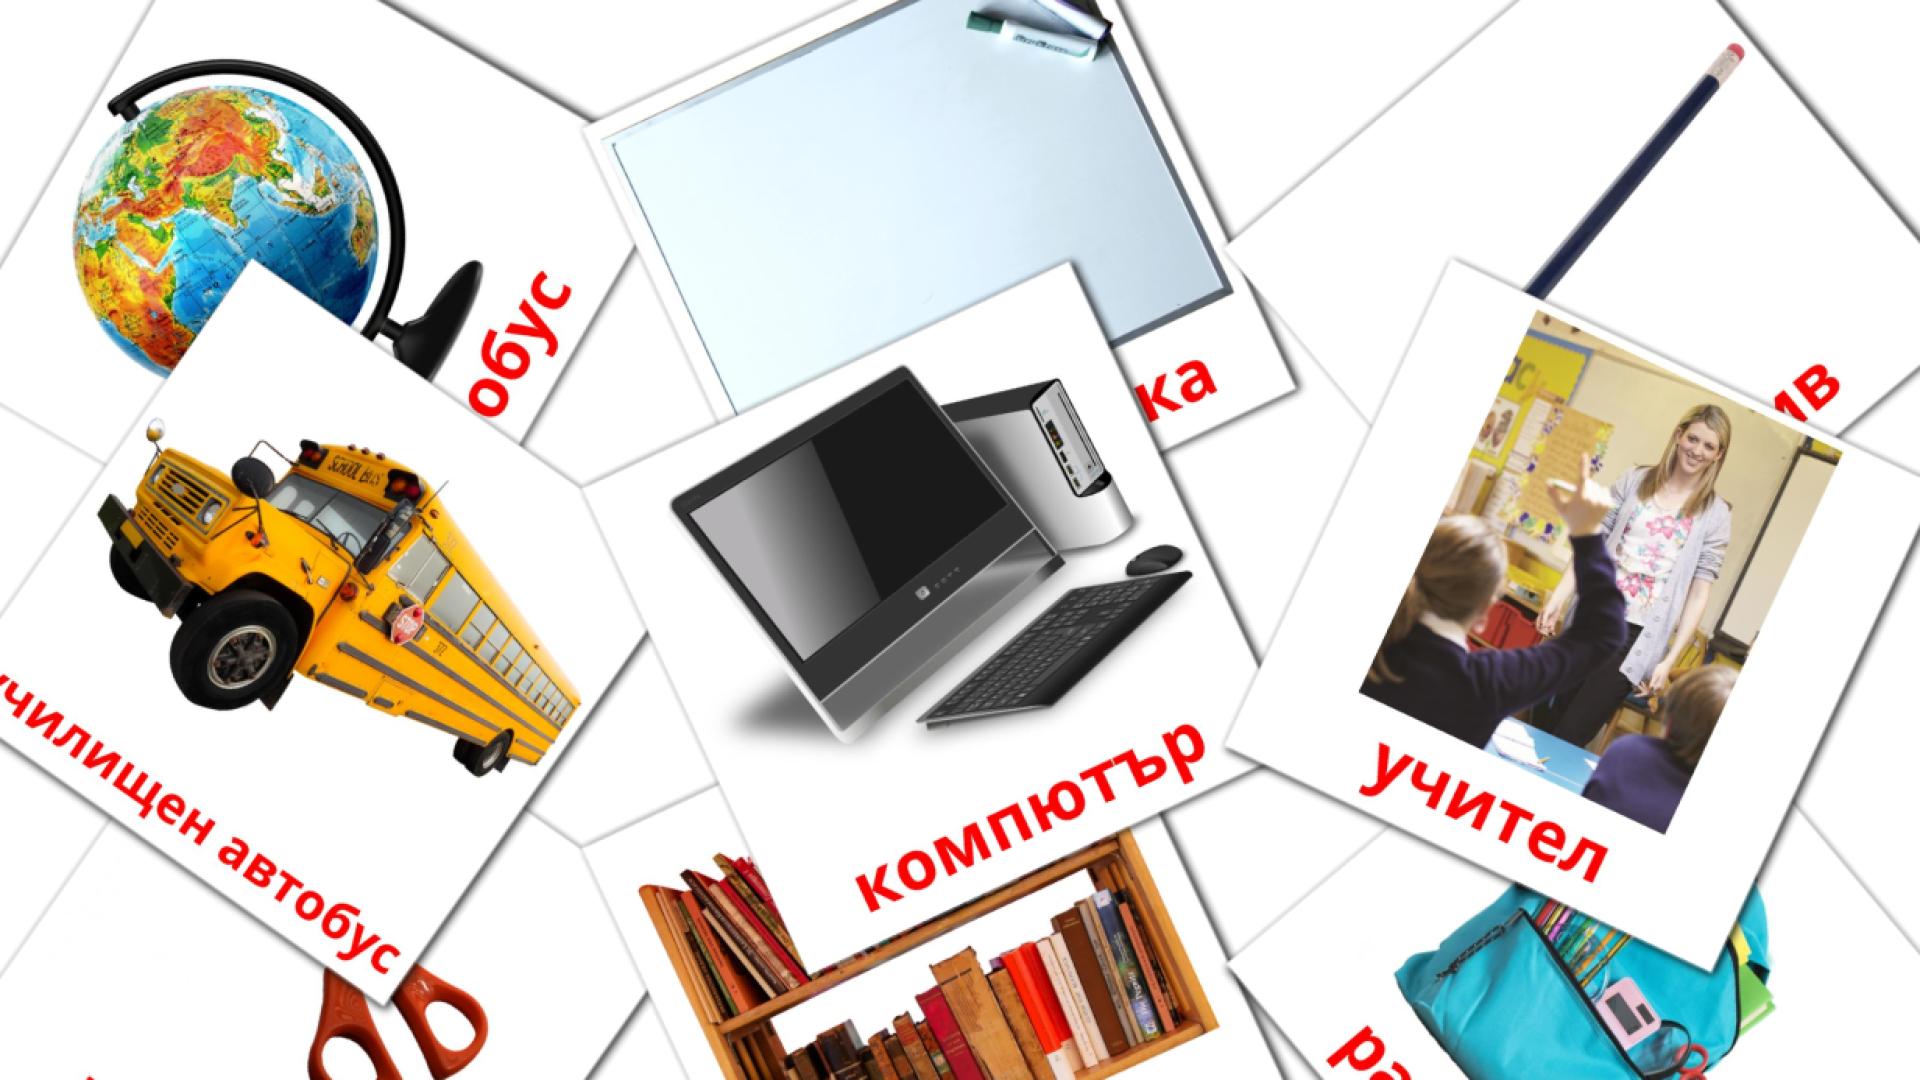 Objetos de sala de aula - Cartões de vocabulário búlgaro